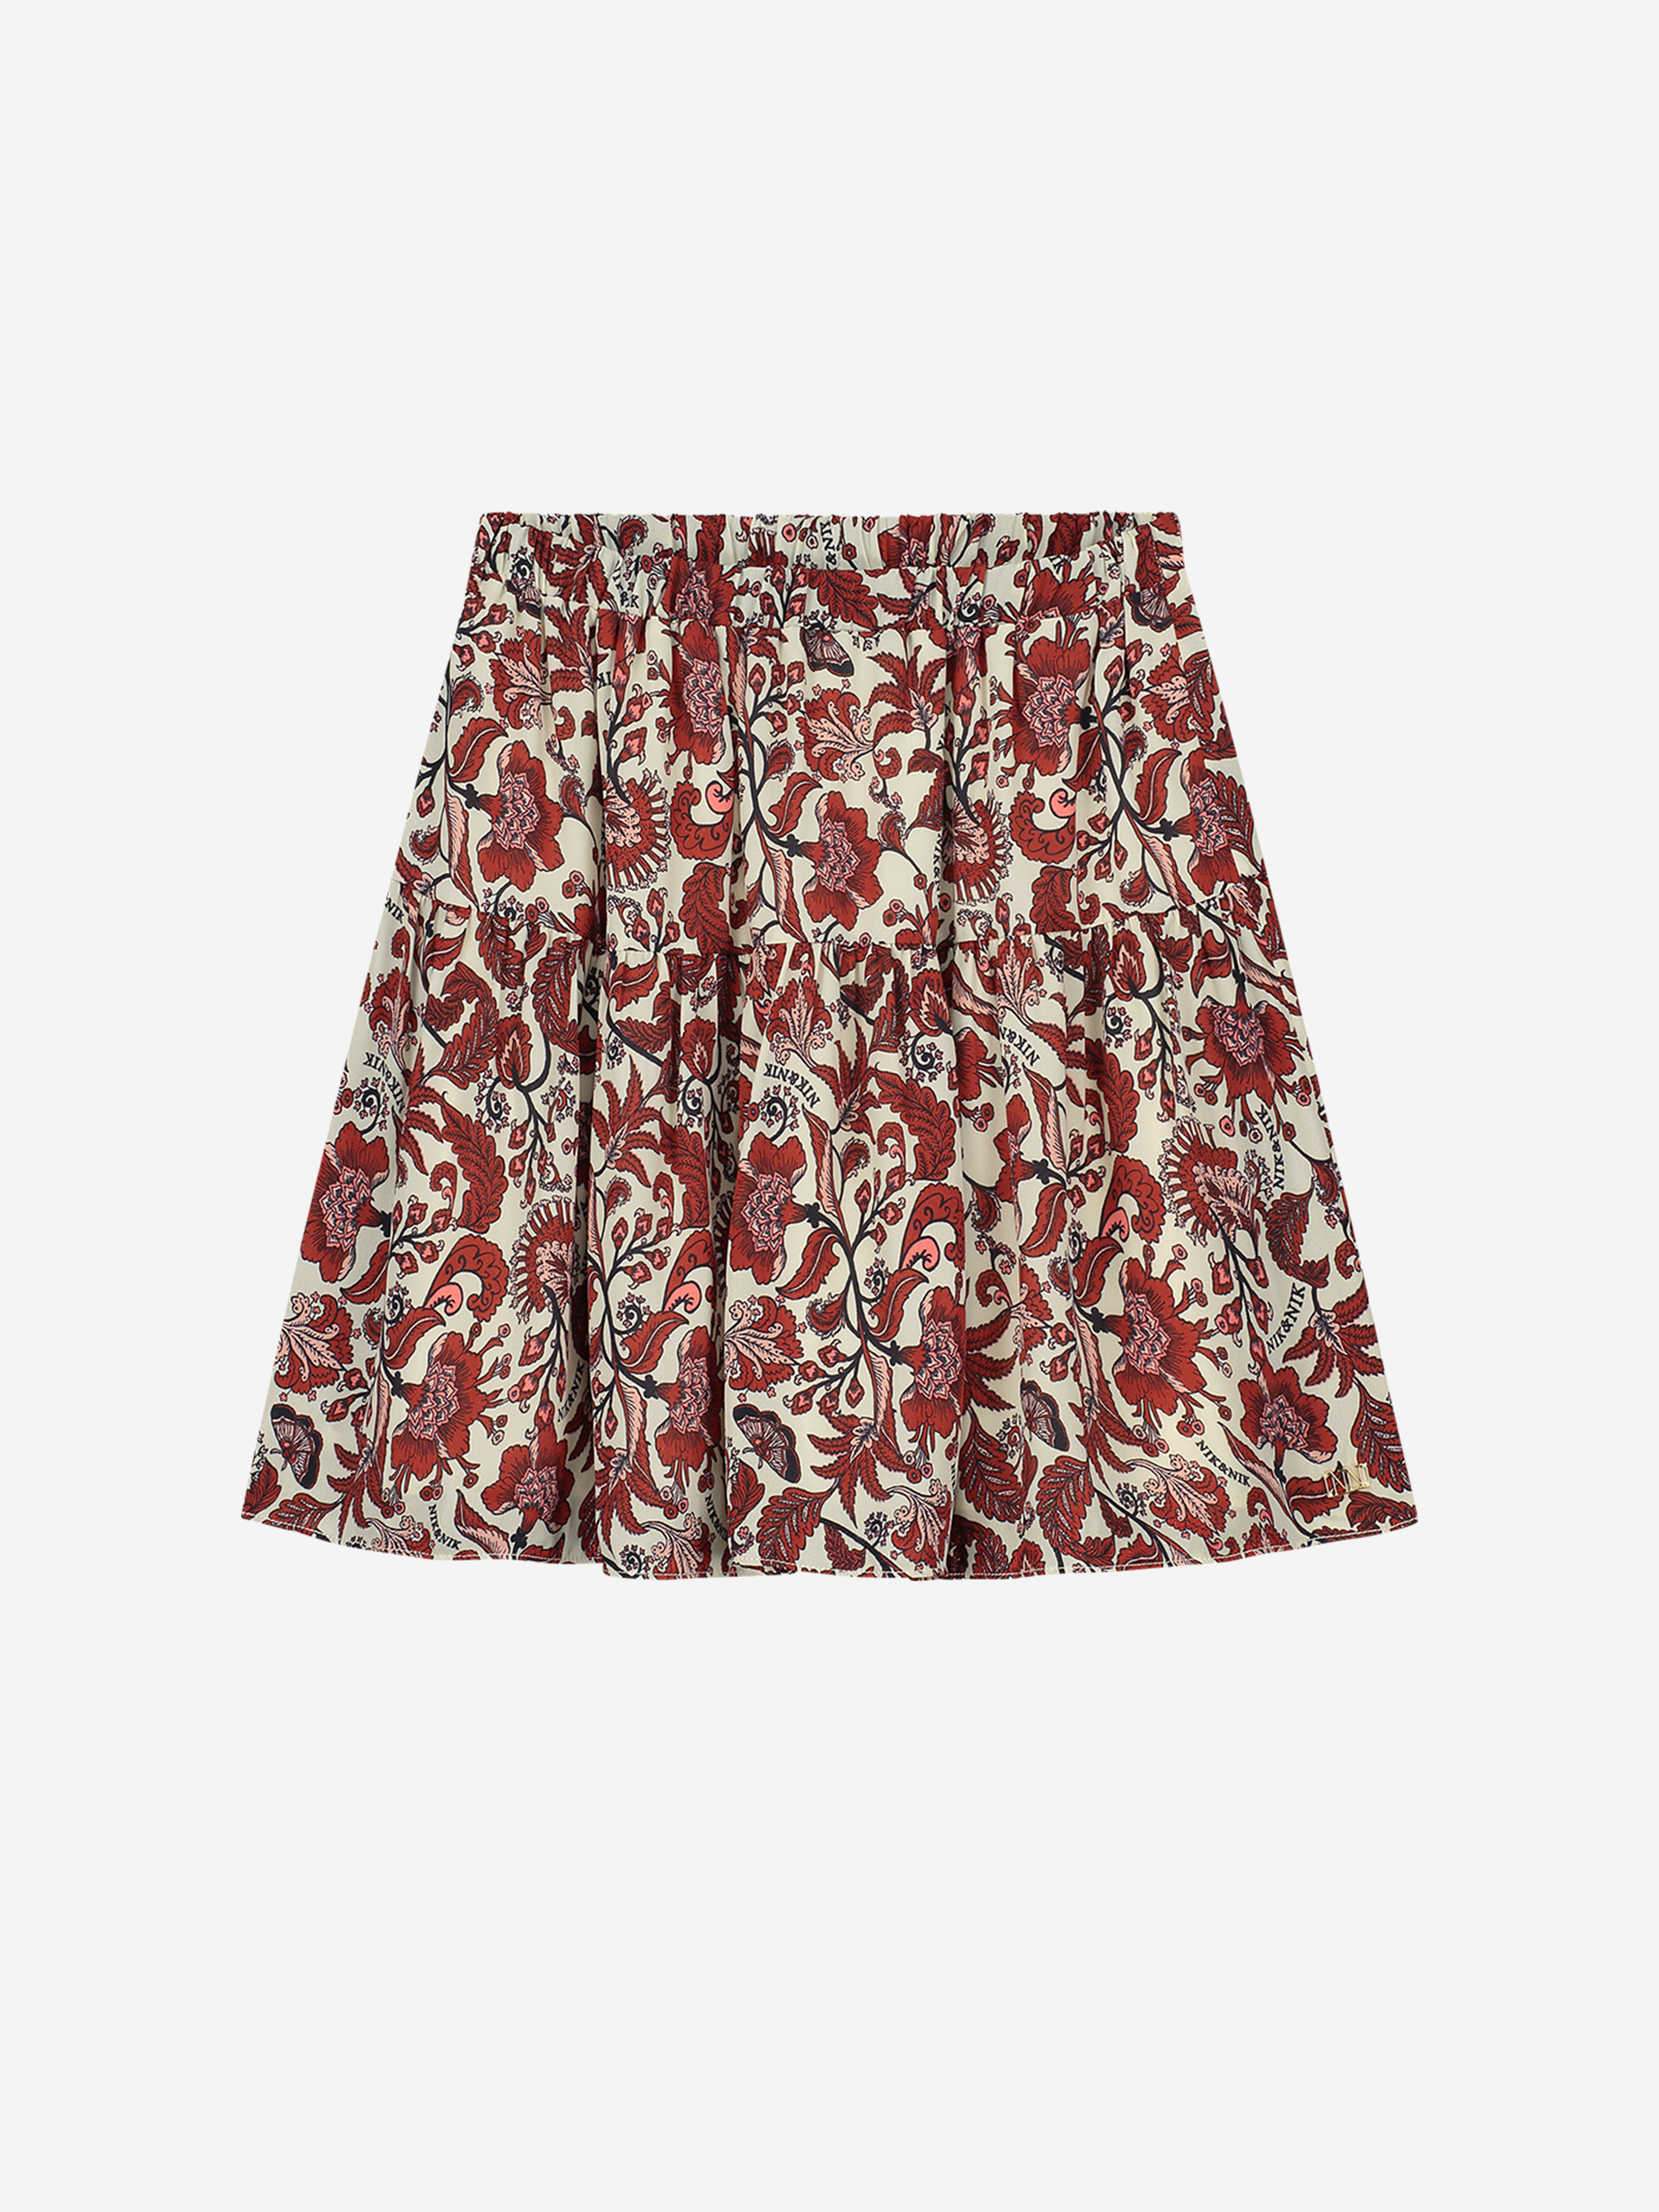  A-line skirt with elastic waistband 